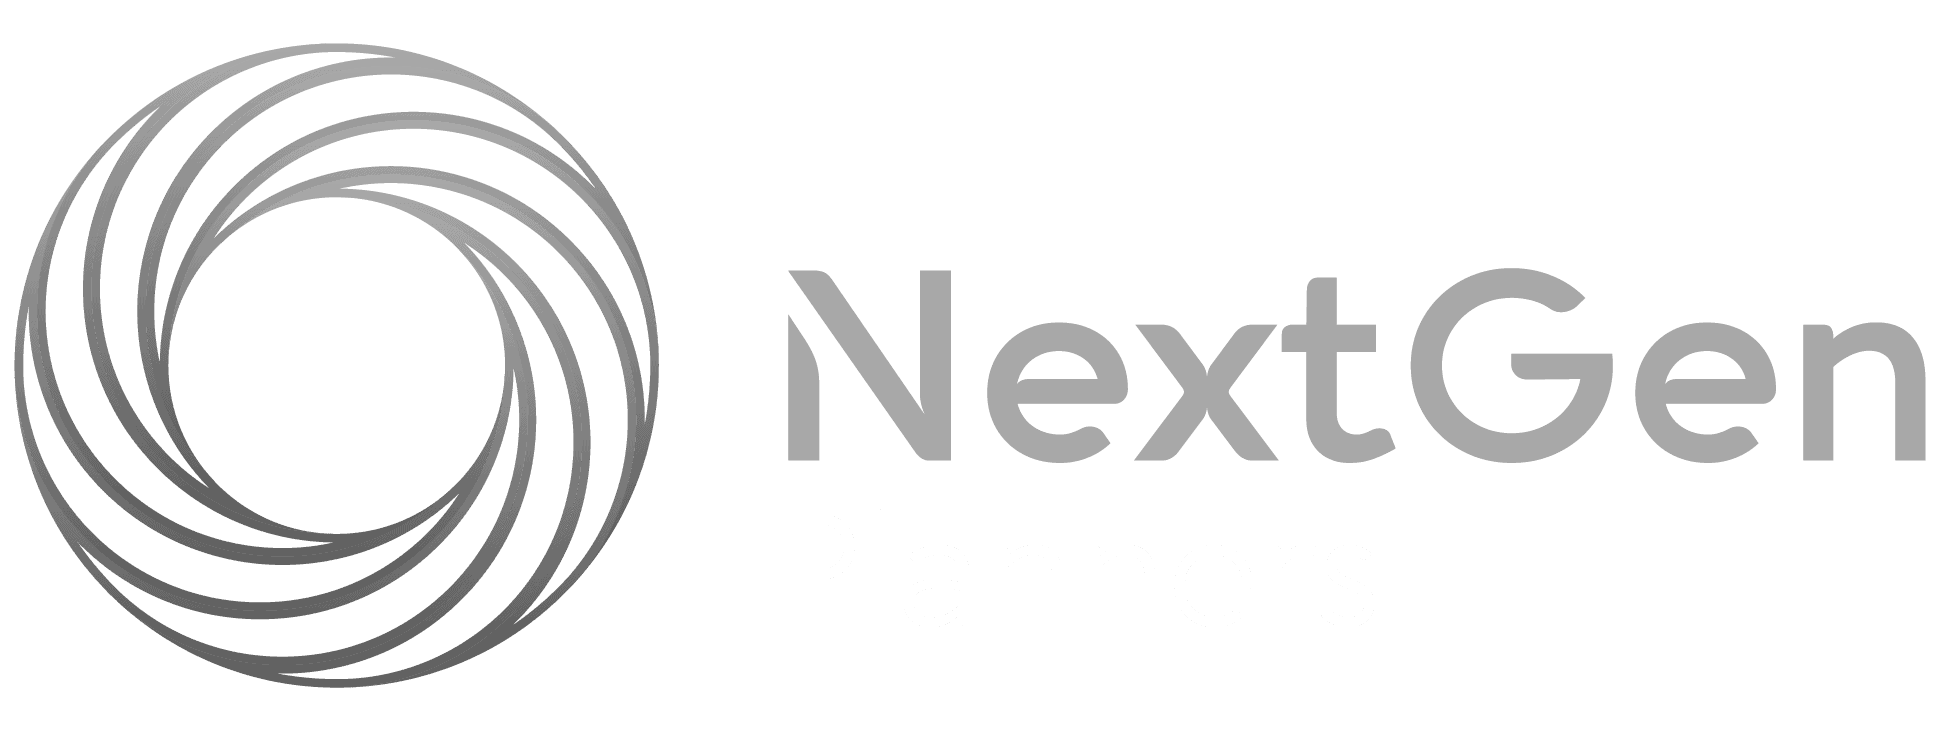 external-nextgen-planners-BW